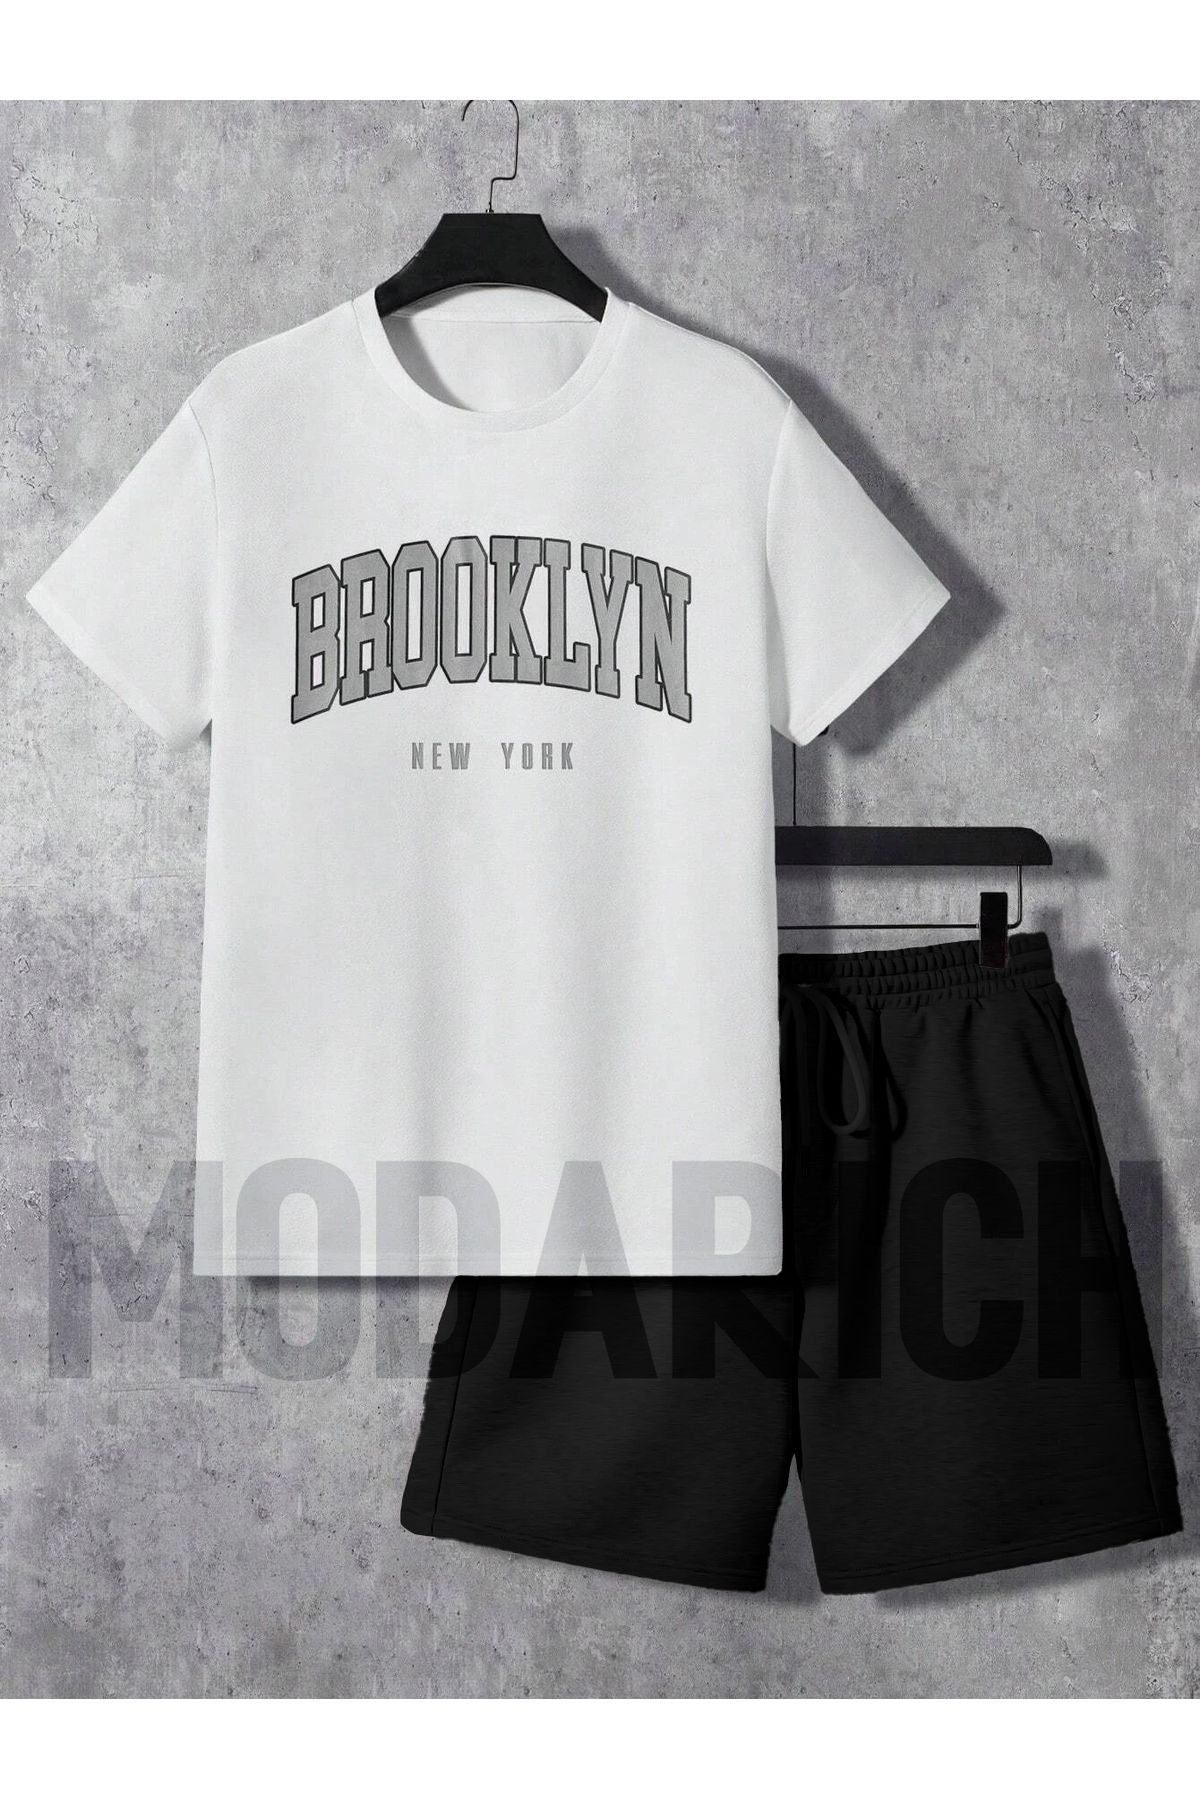 MODARİCH Brooklyn New York Beyaz T-Shirt Siyah Şort - Şortlu Tişört Alt Üst Takım Baskılı Bisiklet Yaka